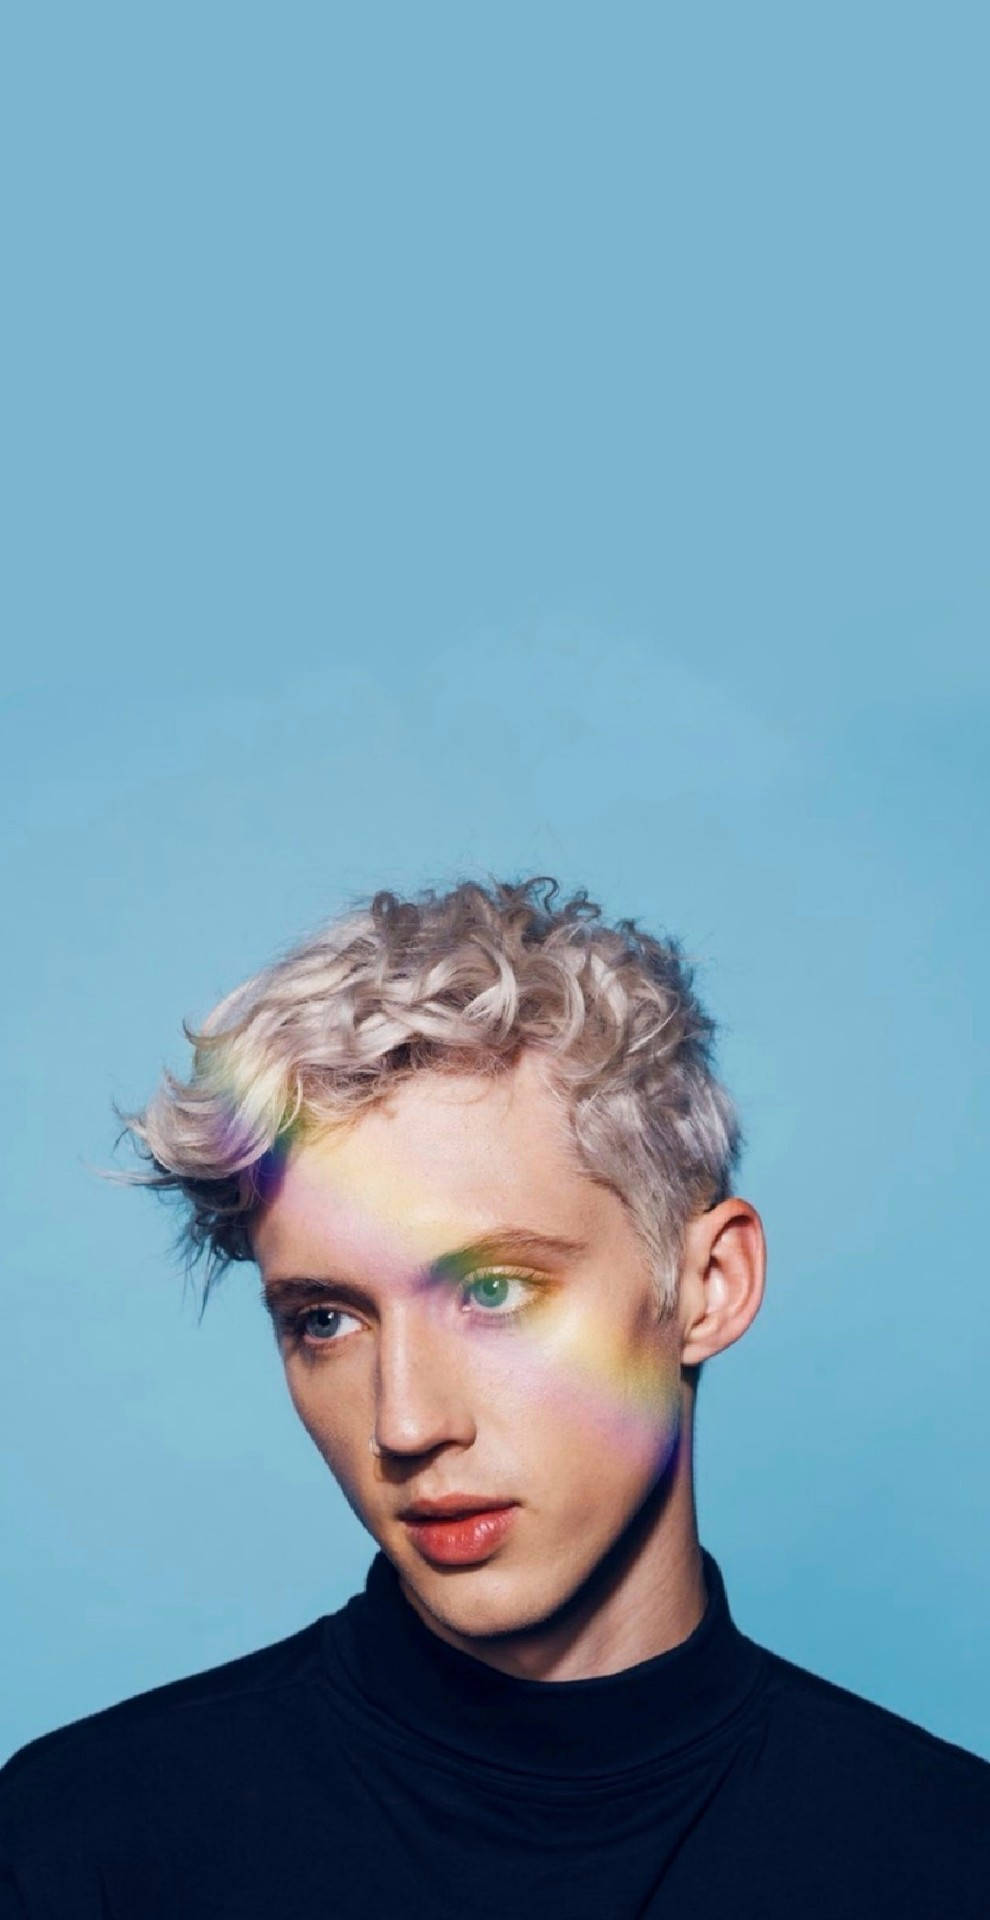 Download Troye Sivan With Rainbow Wallpaper | Wallpapers.com